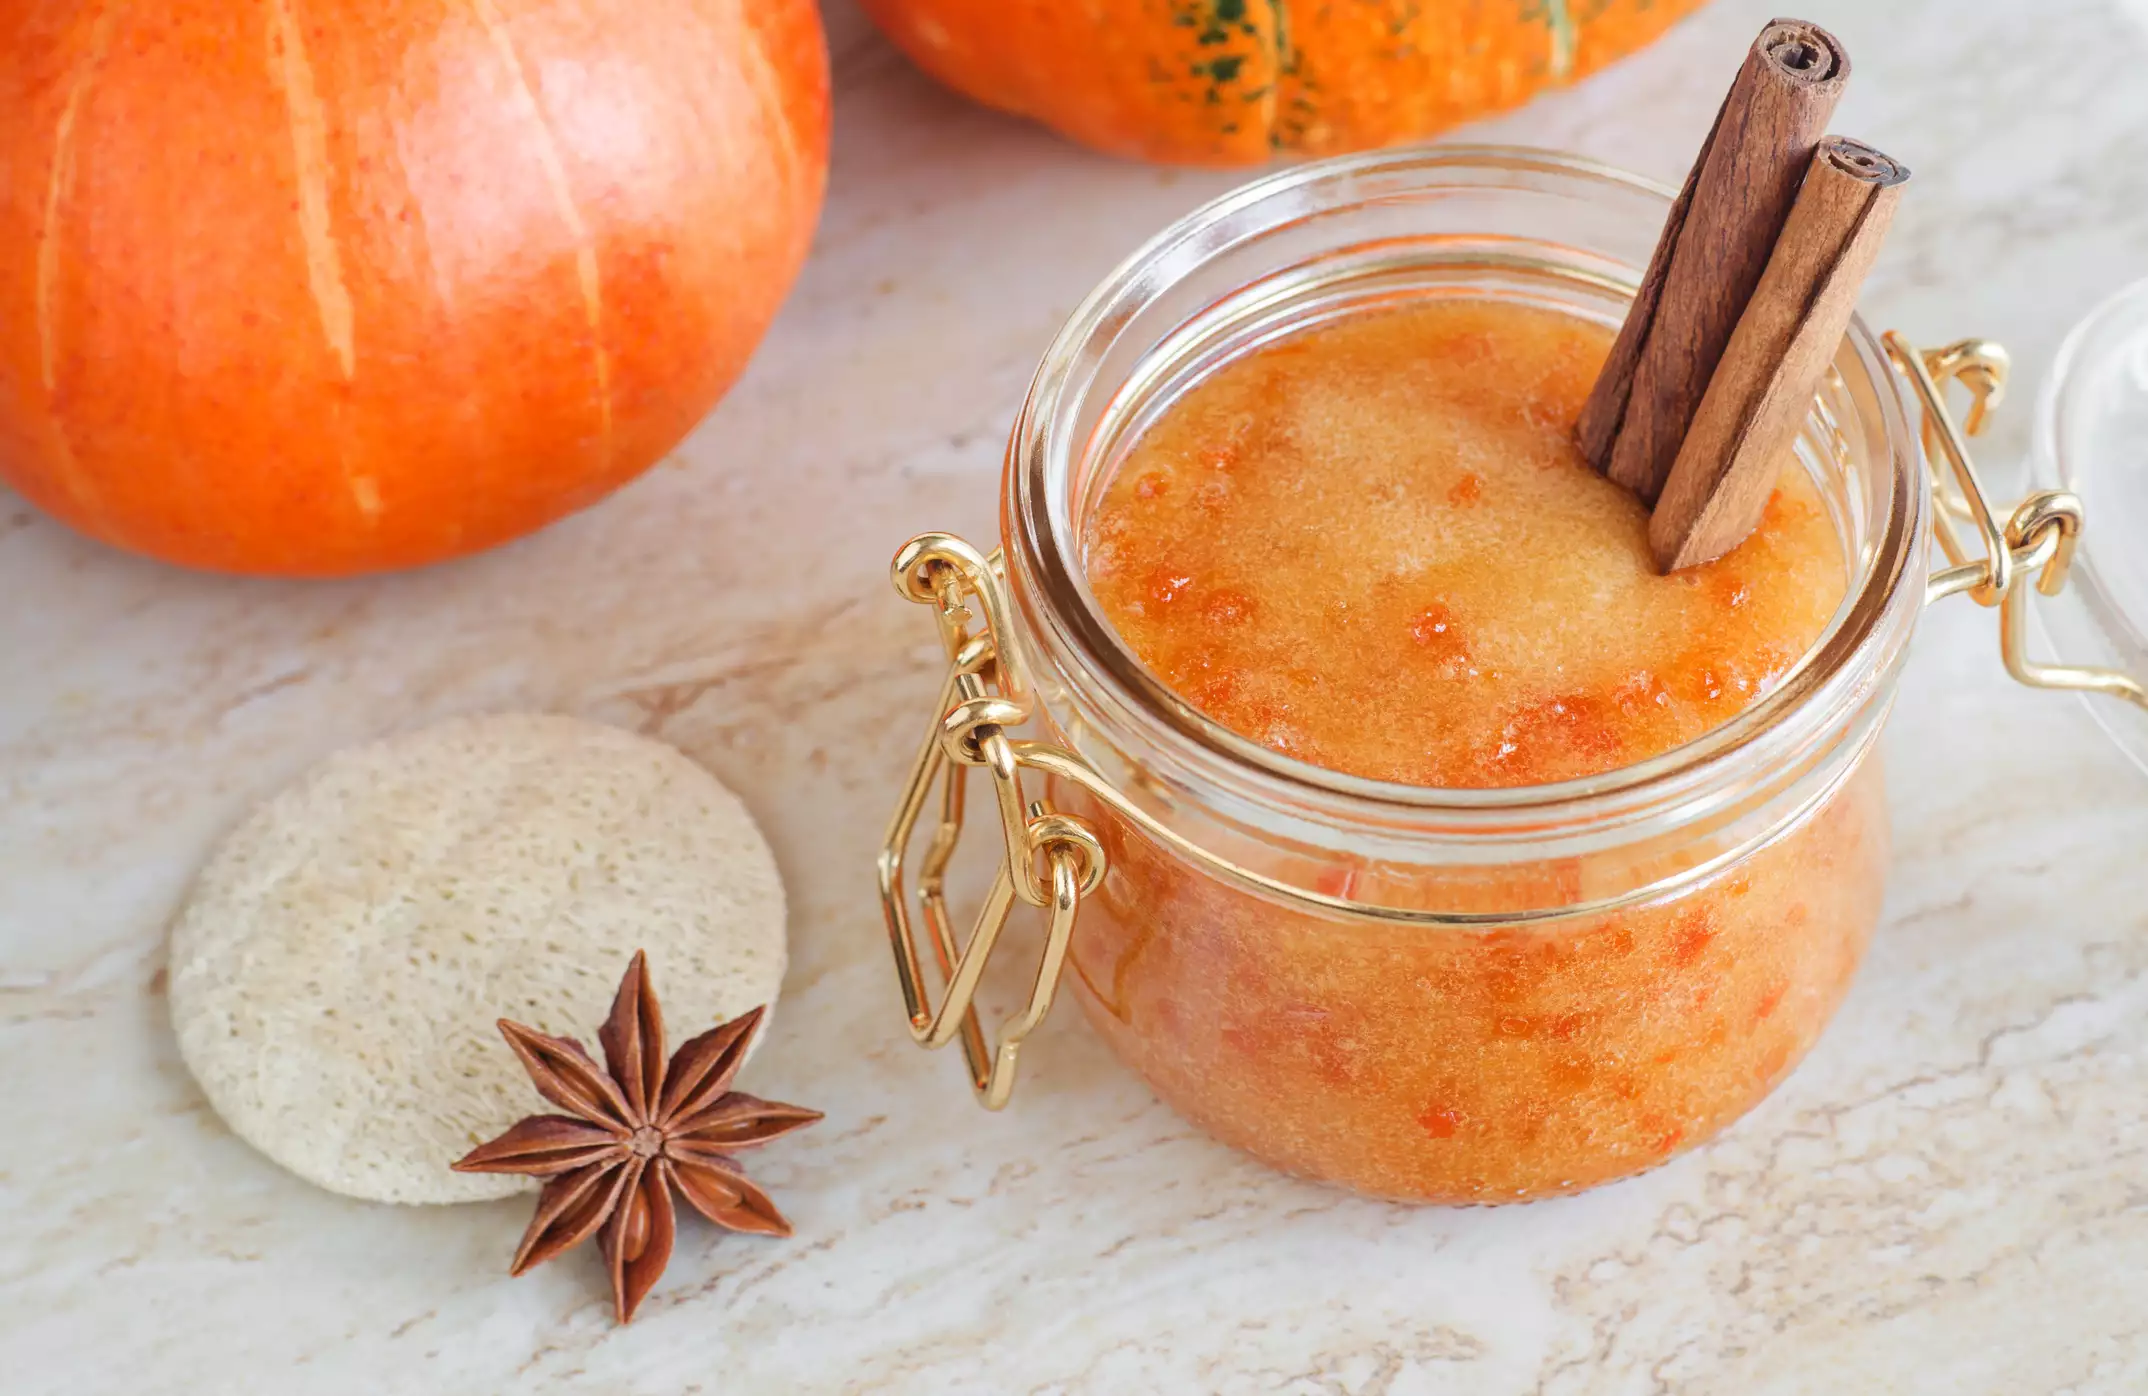 Pumpkin scrub in a glass jar with a loofah pad and cinnamon sticks.